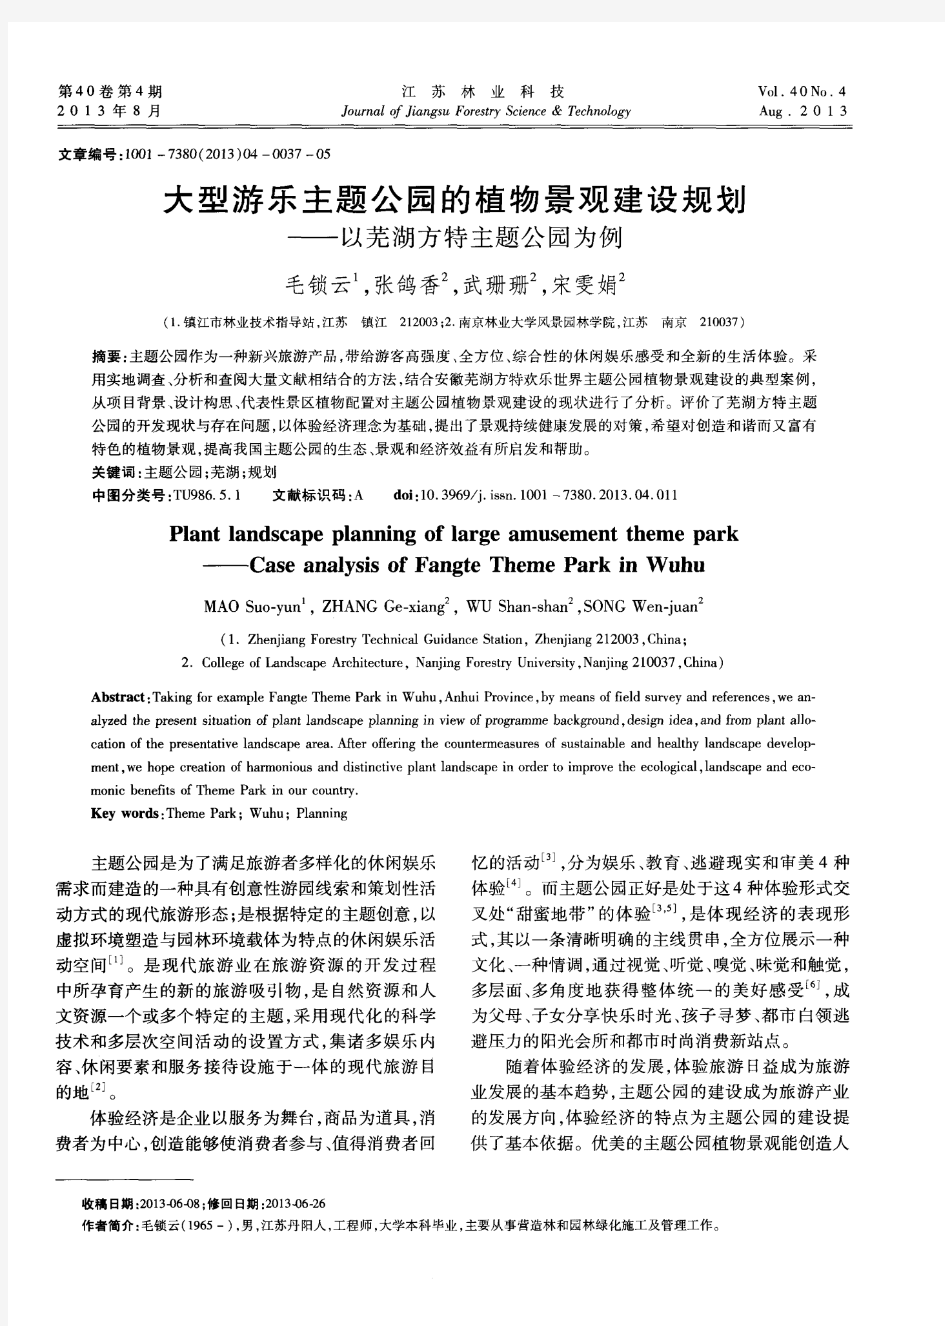 大型游乐主题公园的植物景观建设规划——以芜湖方特主题公园为例